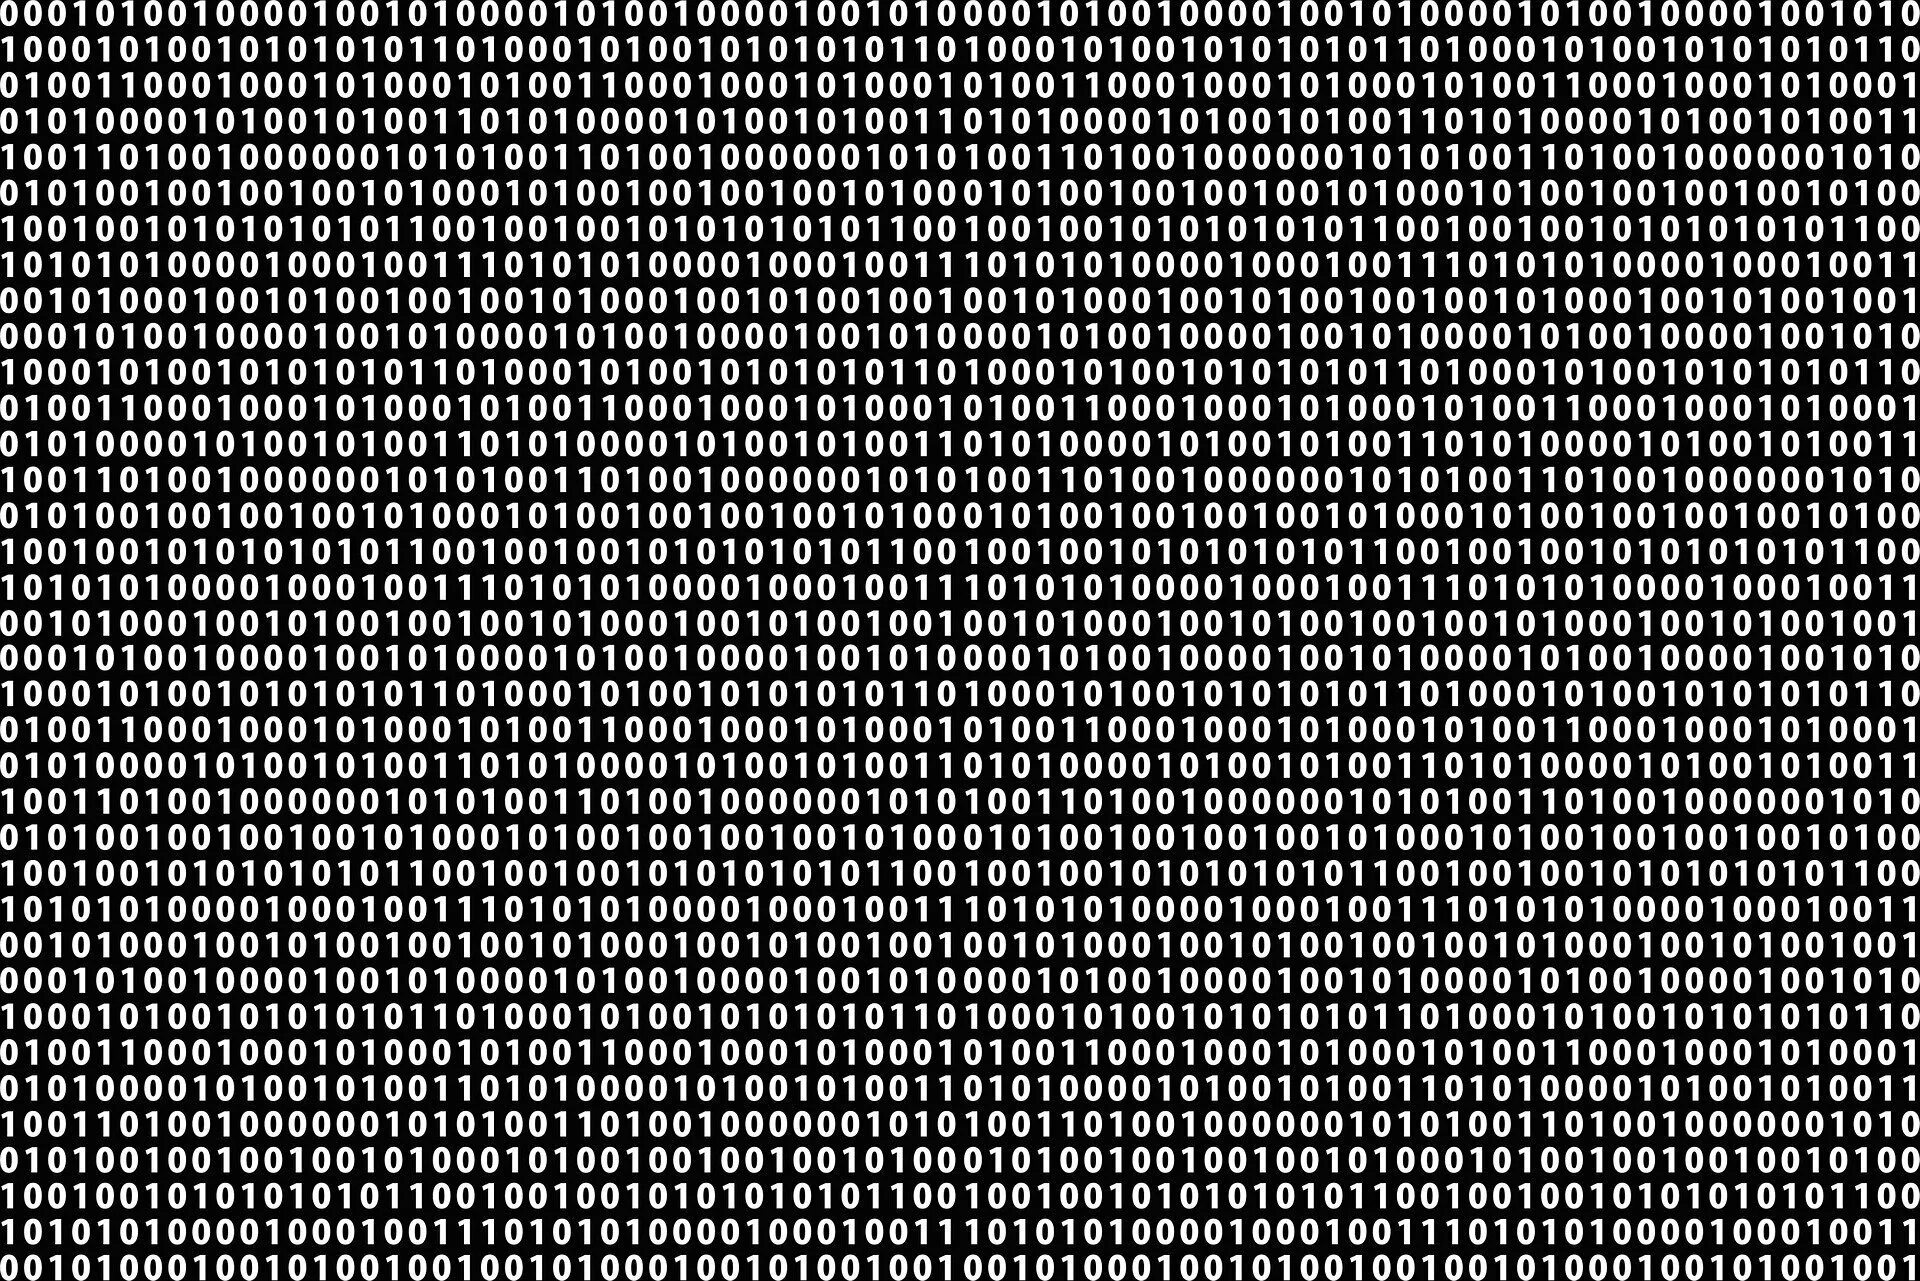 Двоичный код. Компьютерные коды. Двоичный компьютерный код. Двоичный код фон. Двоичные данные картинки